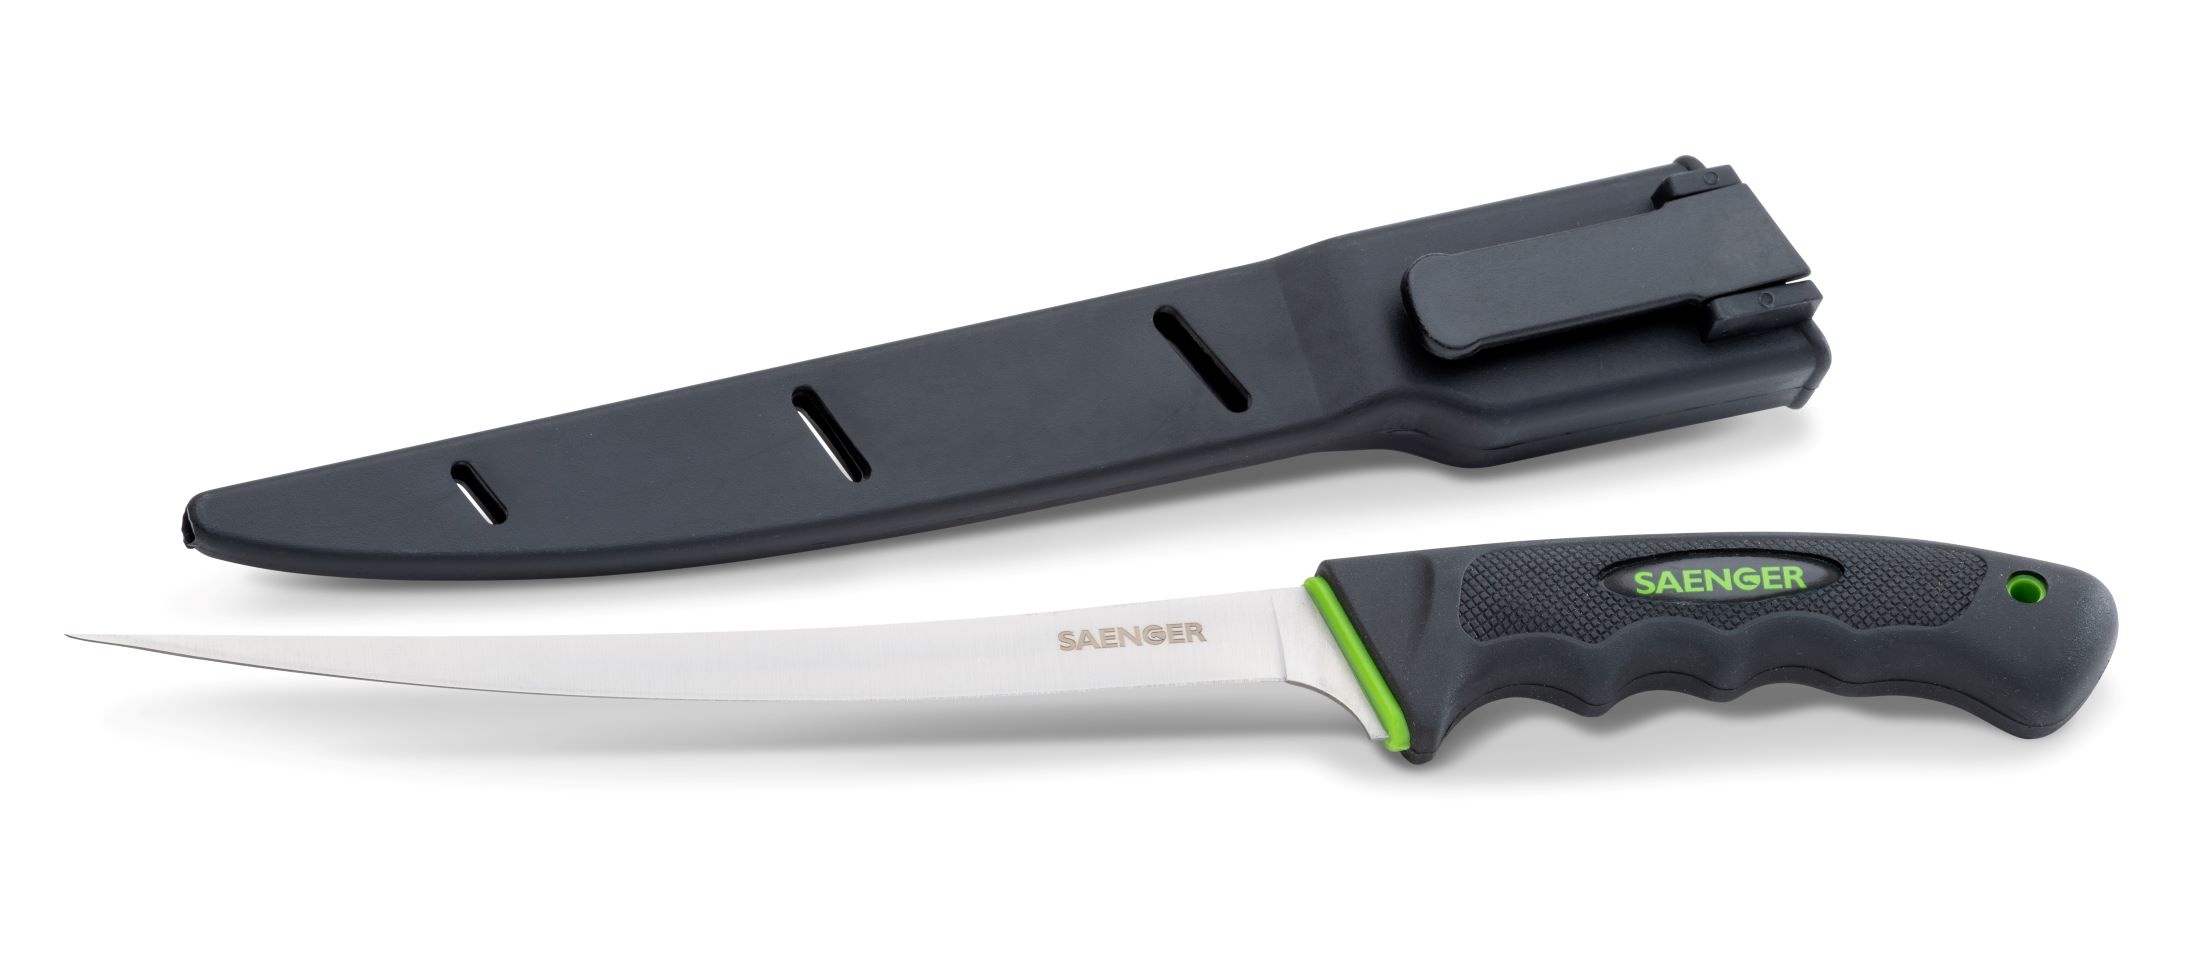 Saenger filetovací nůž s pouzdrem Power gripp-7046211